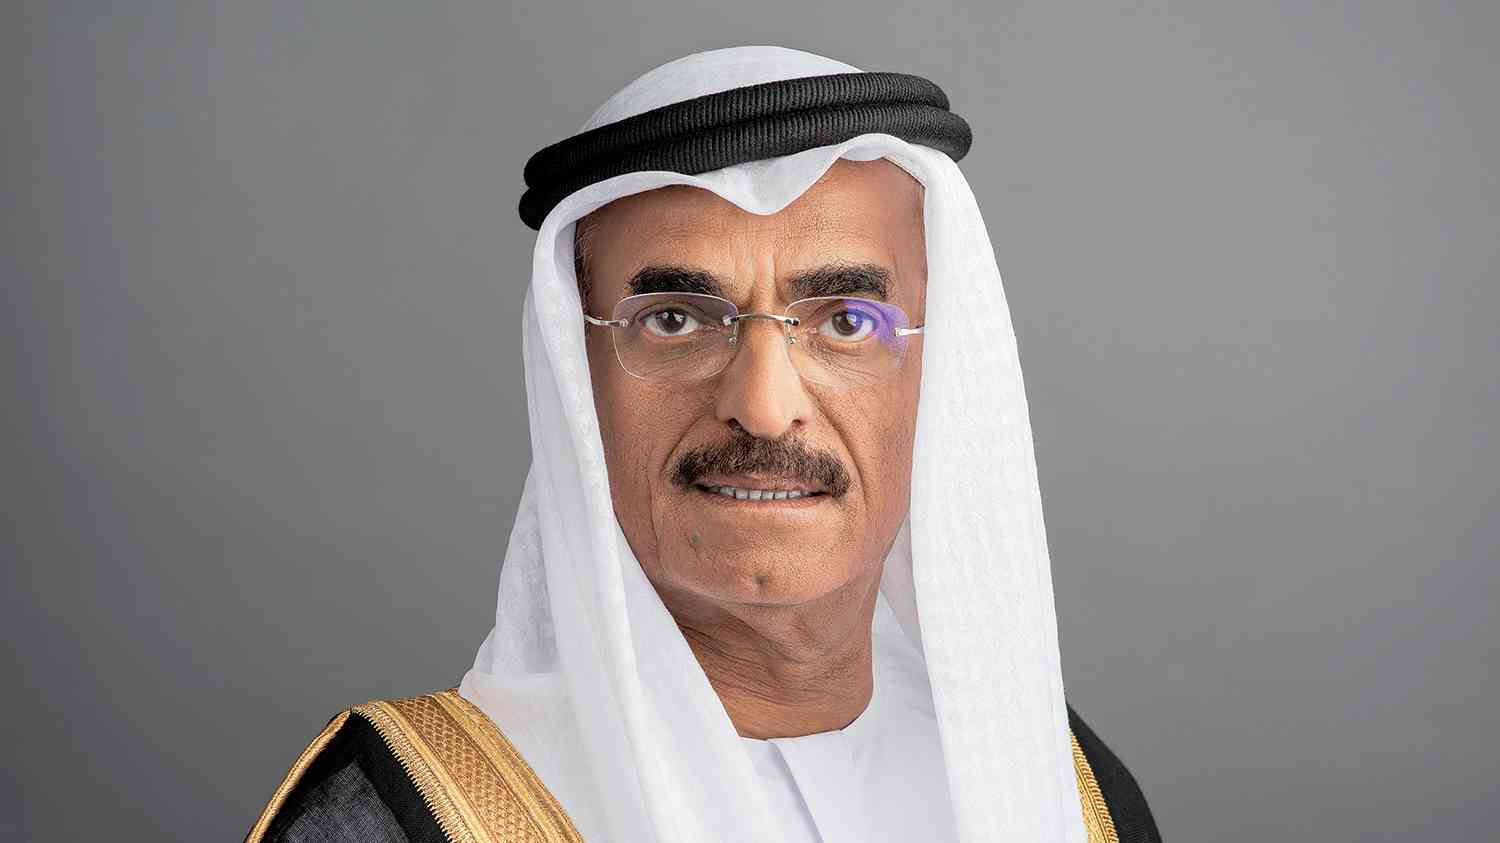 تغير المناخ - وزير التغير المناخي في الإمارات عبدالله النعيمي